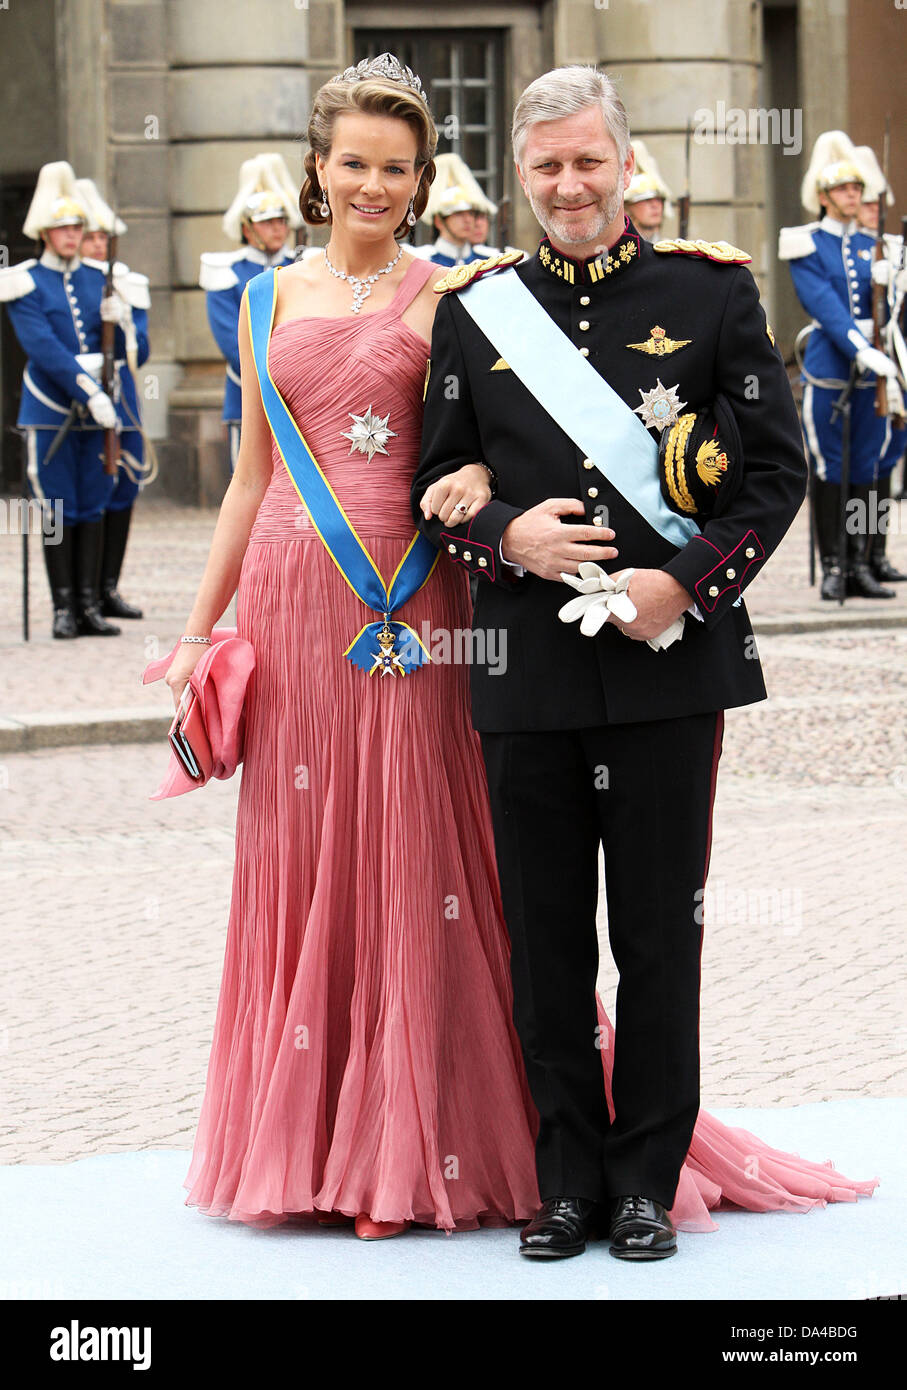 Le Prince Philippe de Belgique et la Princesse Mathilde de Belgique arrivent pour le mariage de la Princesse Victoria de Suède et Daniel Westling à Stockholm, Suède, le 19 juin 2010. Photo : Albert (NETHRELÖANDS Niboer OUT) Banque D'Images